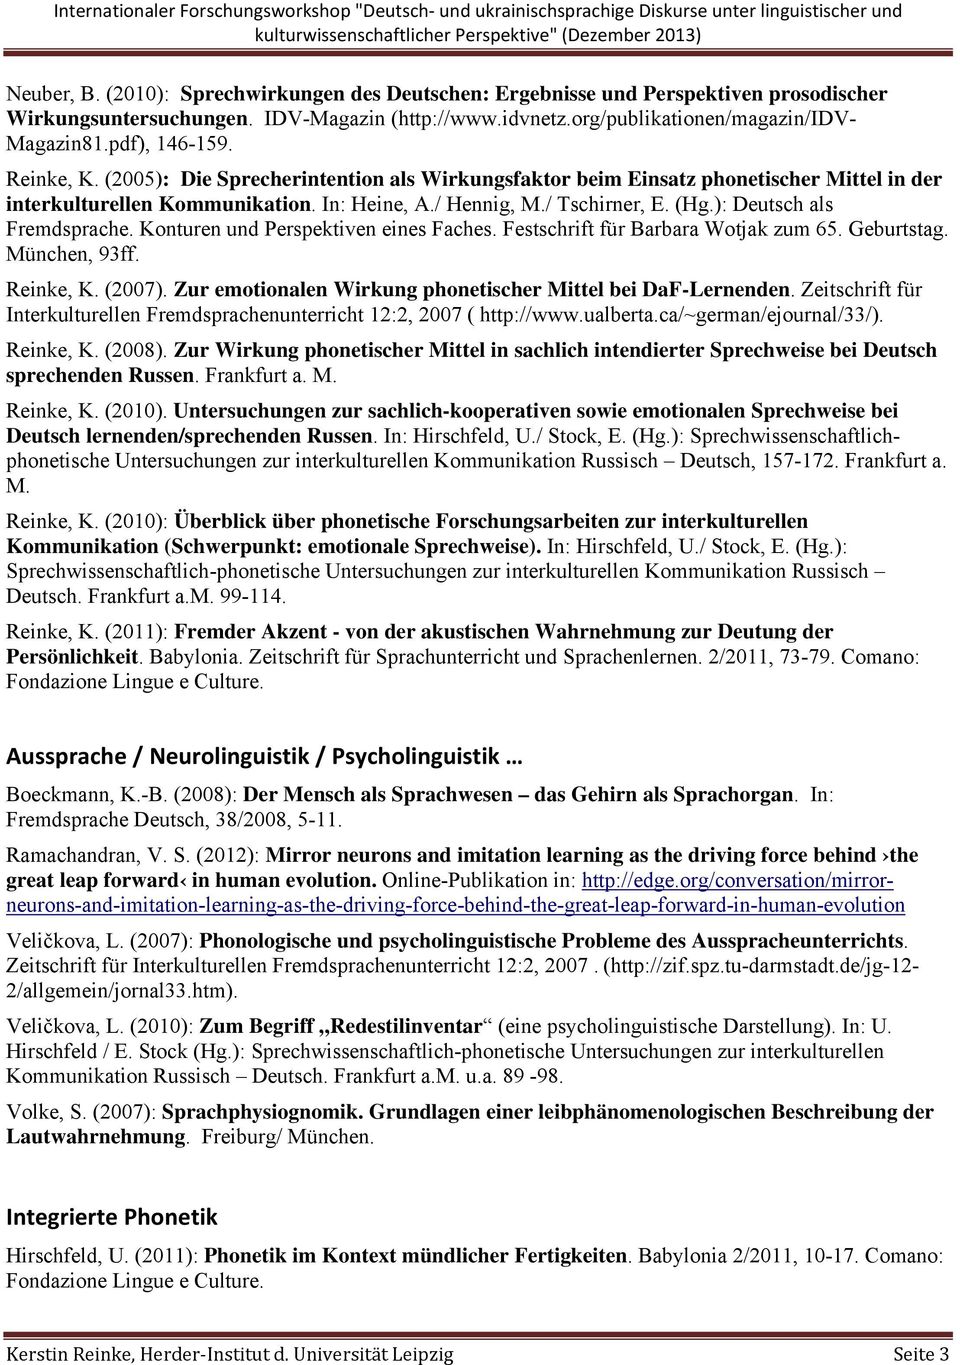 ): Deutsch als Fremdsprache. Konturen und Perspektiven eines Faches. Festschrift für Barbara Wotjak zum 65. Geburtstag. München, 93ff. Reinke, K. (2007).